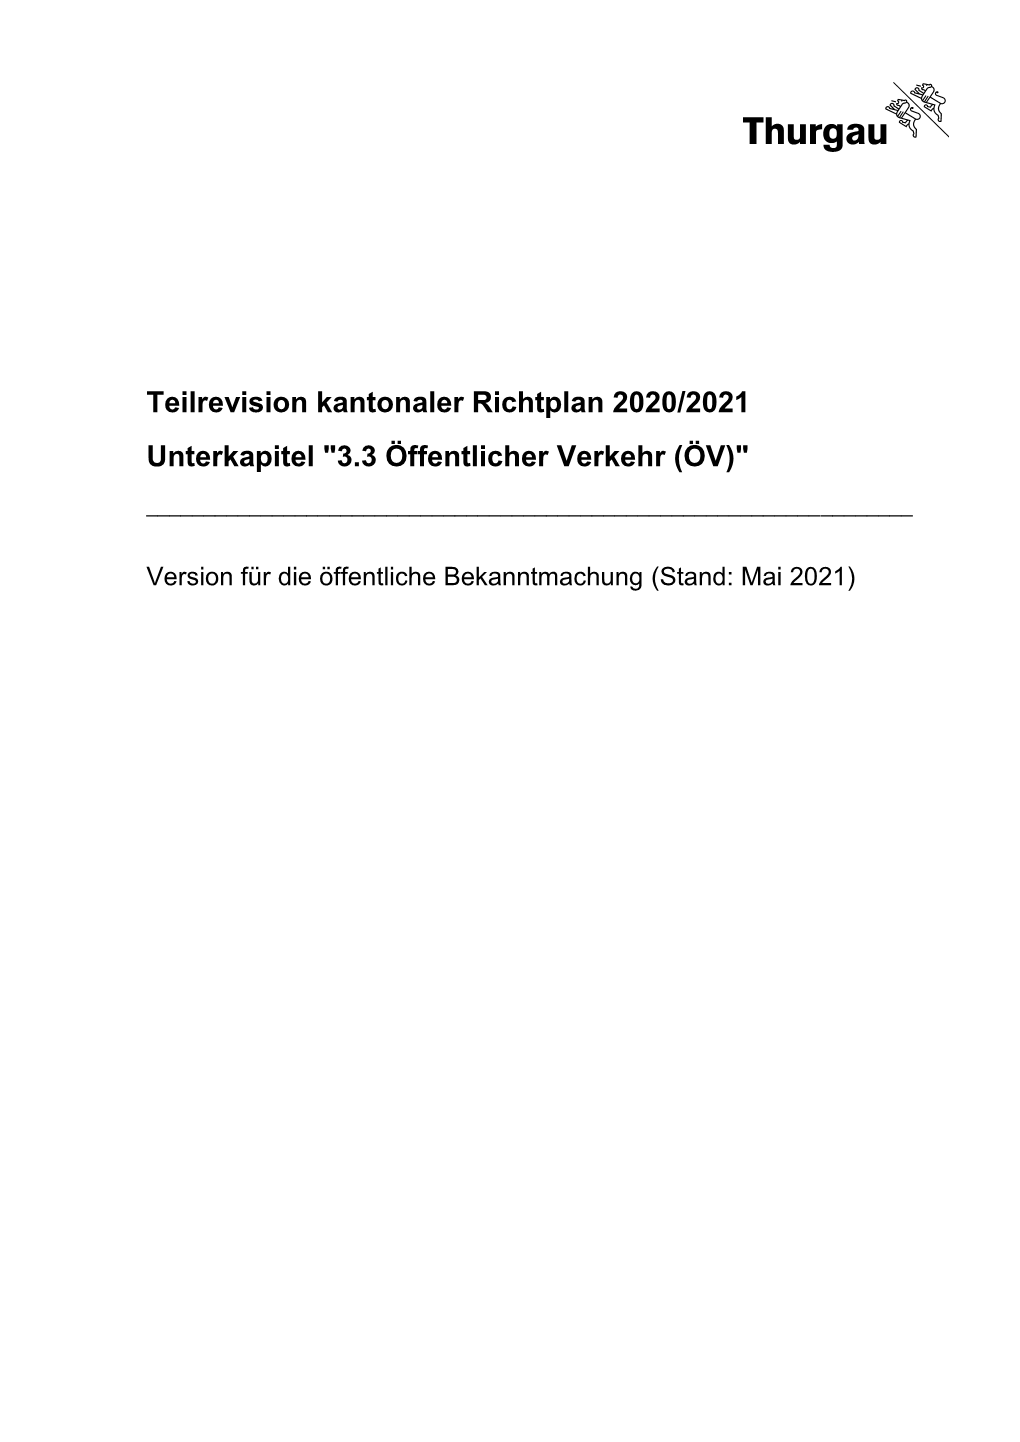 Teilrevision Kantonaler Richtplan 2020/2021 Unterkapitel "3.3 Öffentlicher Verkehr (ÖV)"